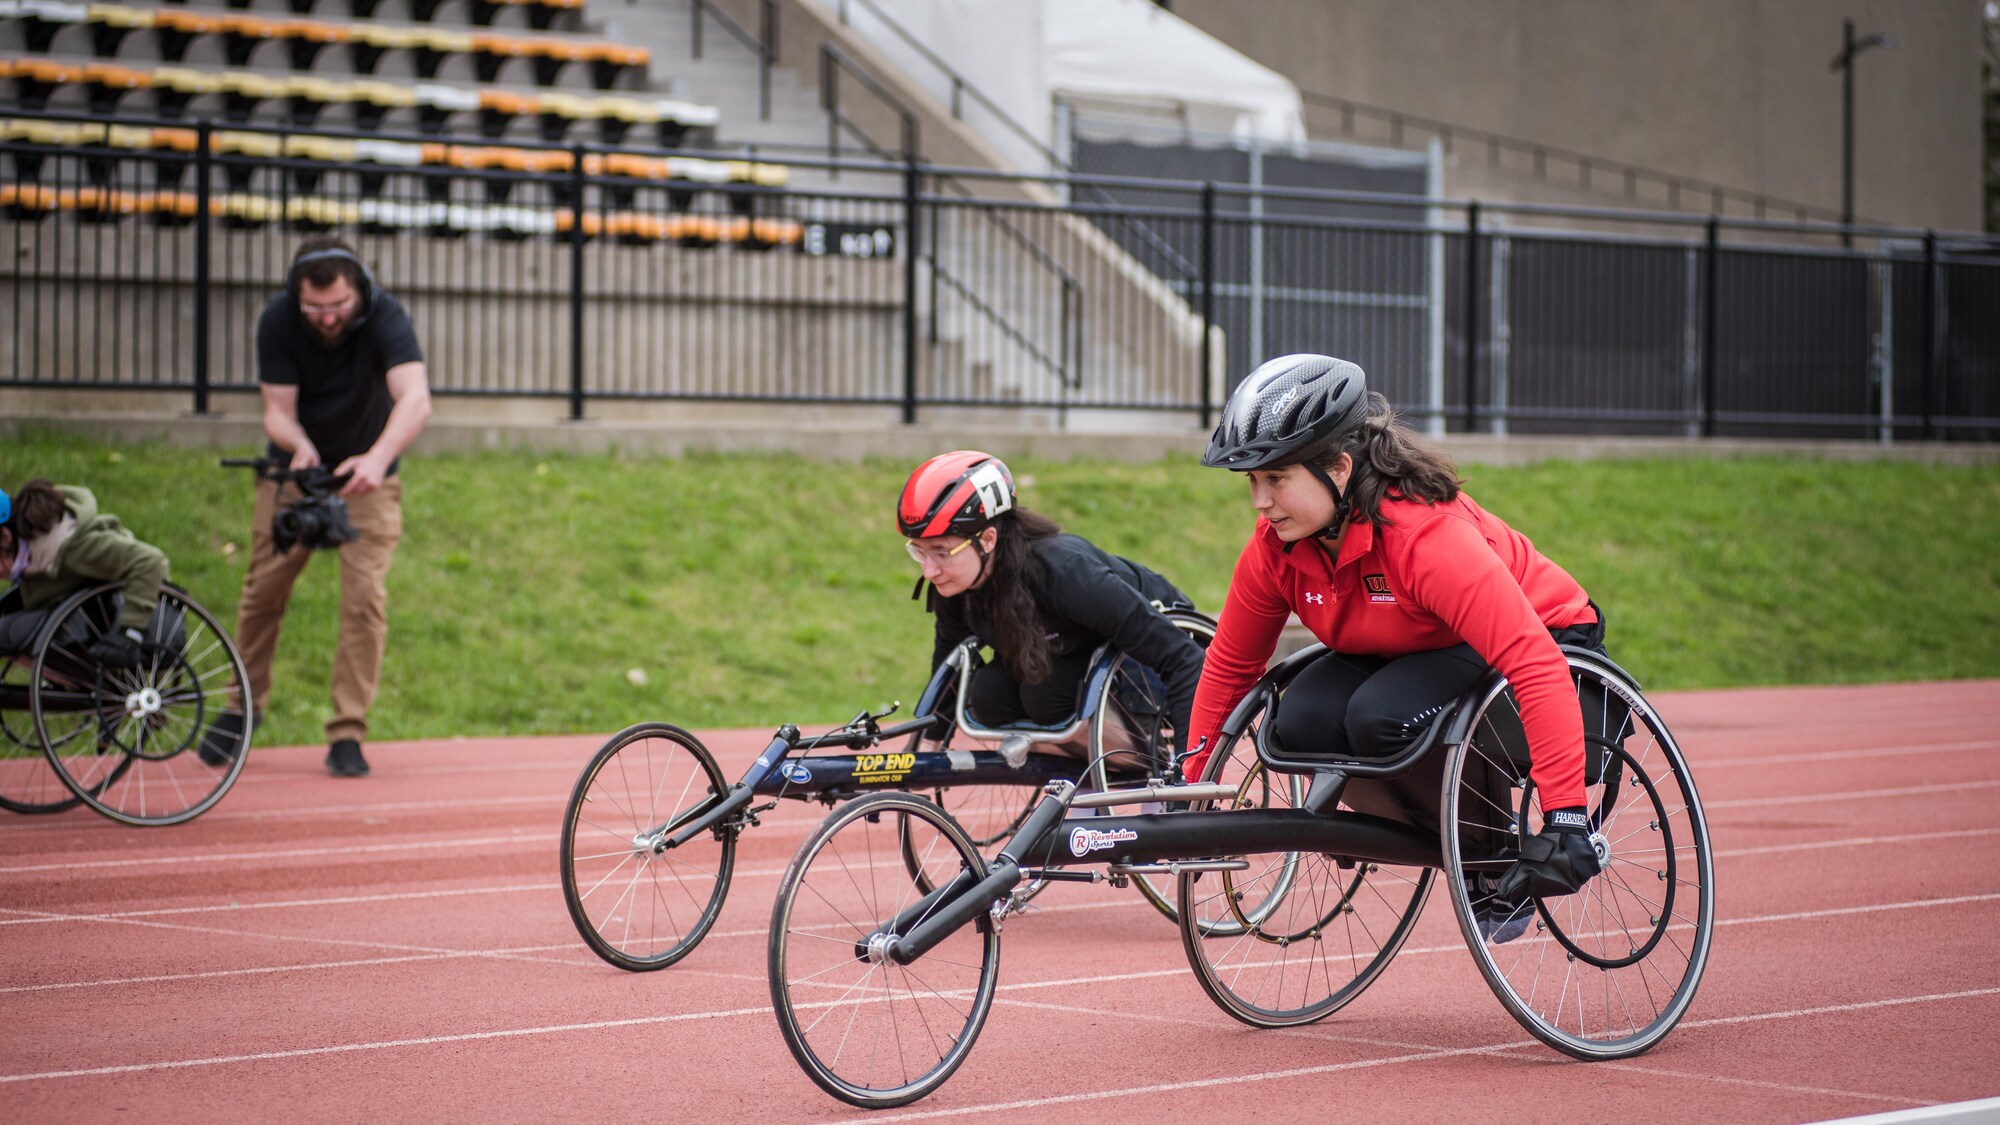 Une femme en rouge dispute une course de fauteuil roulant à côté d'une jeune athlète dans le couloir voisin